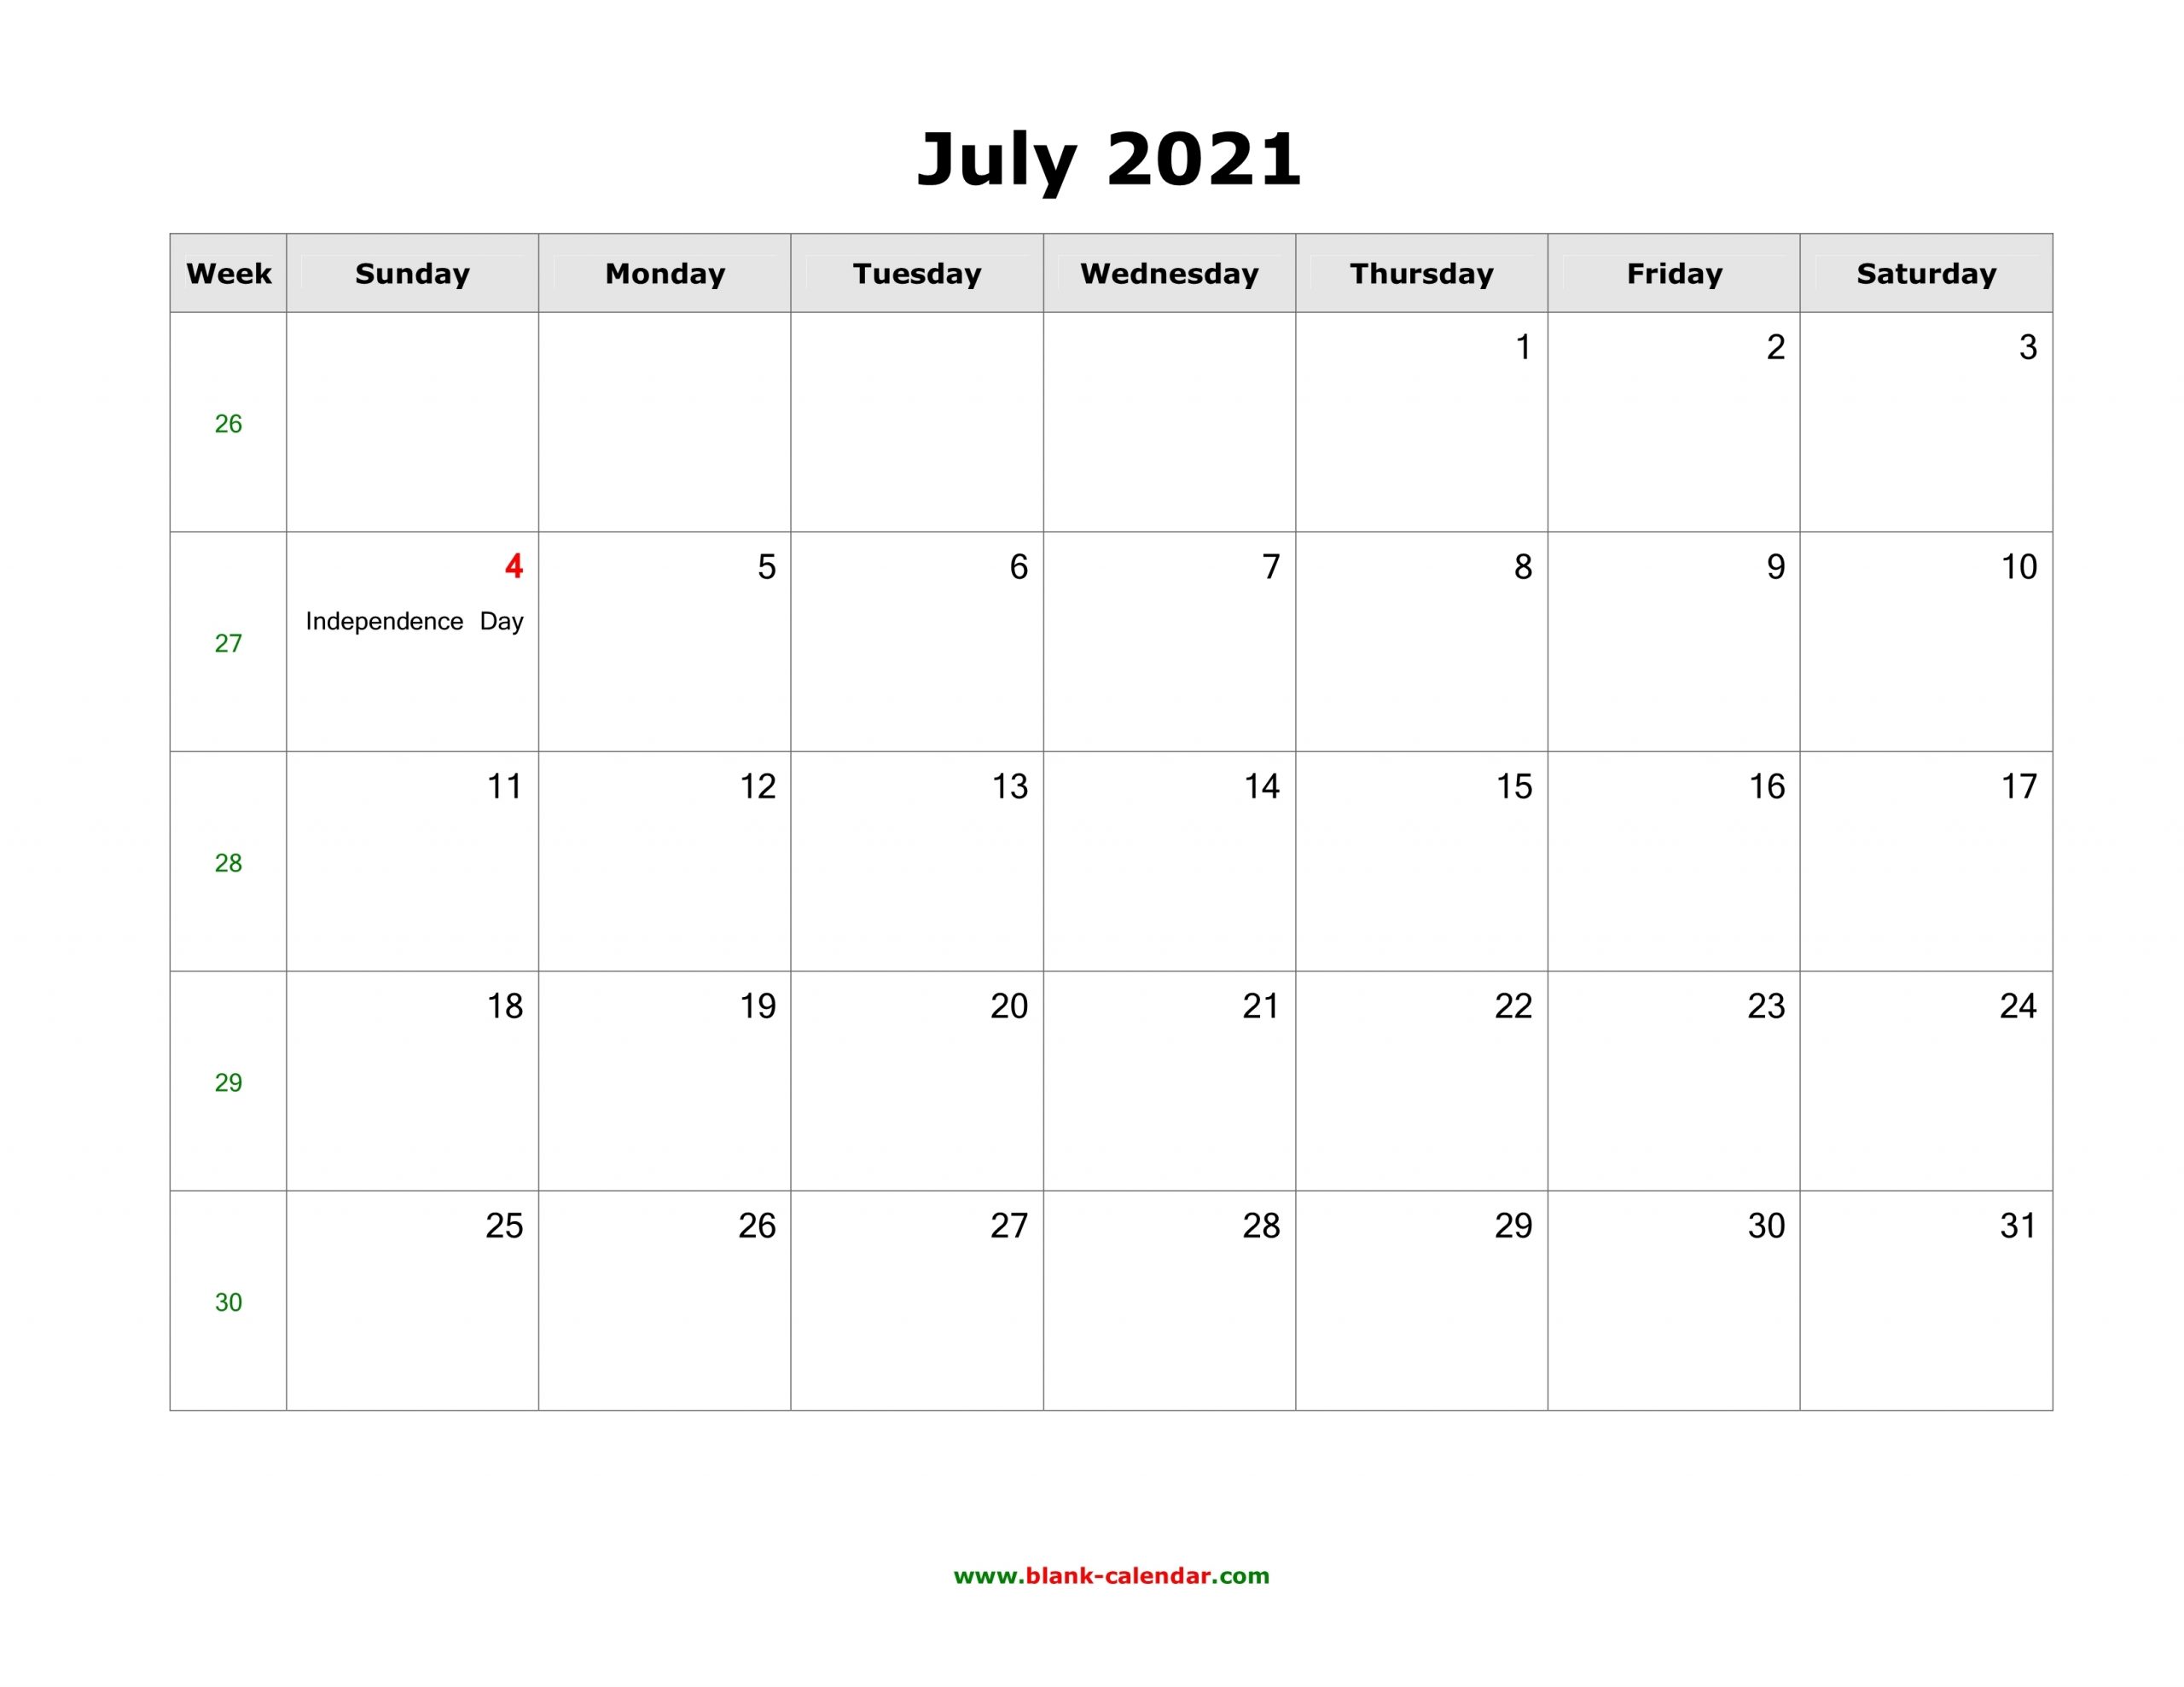 Get July 2021 Calendar Template